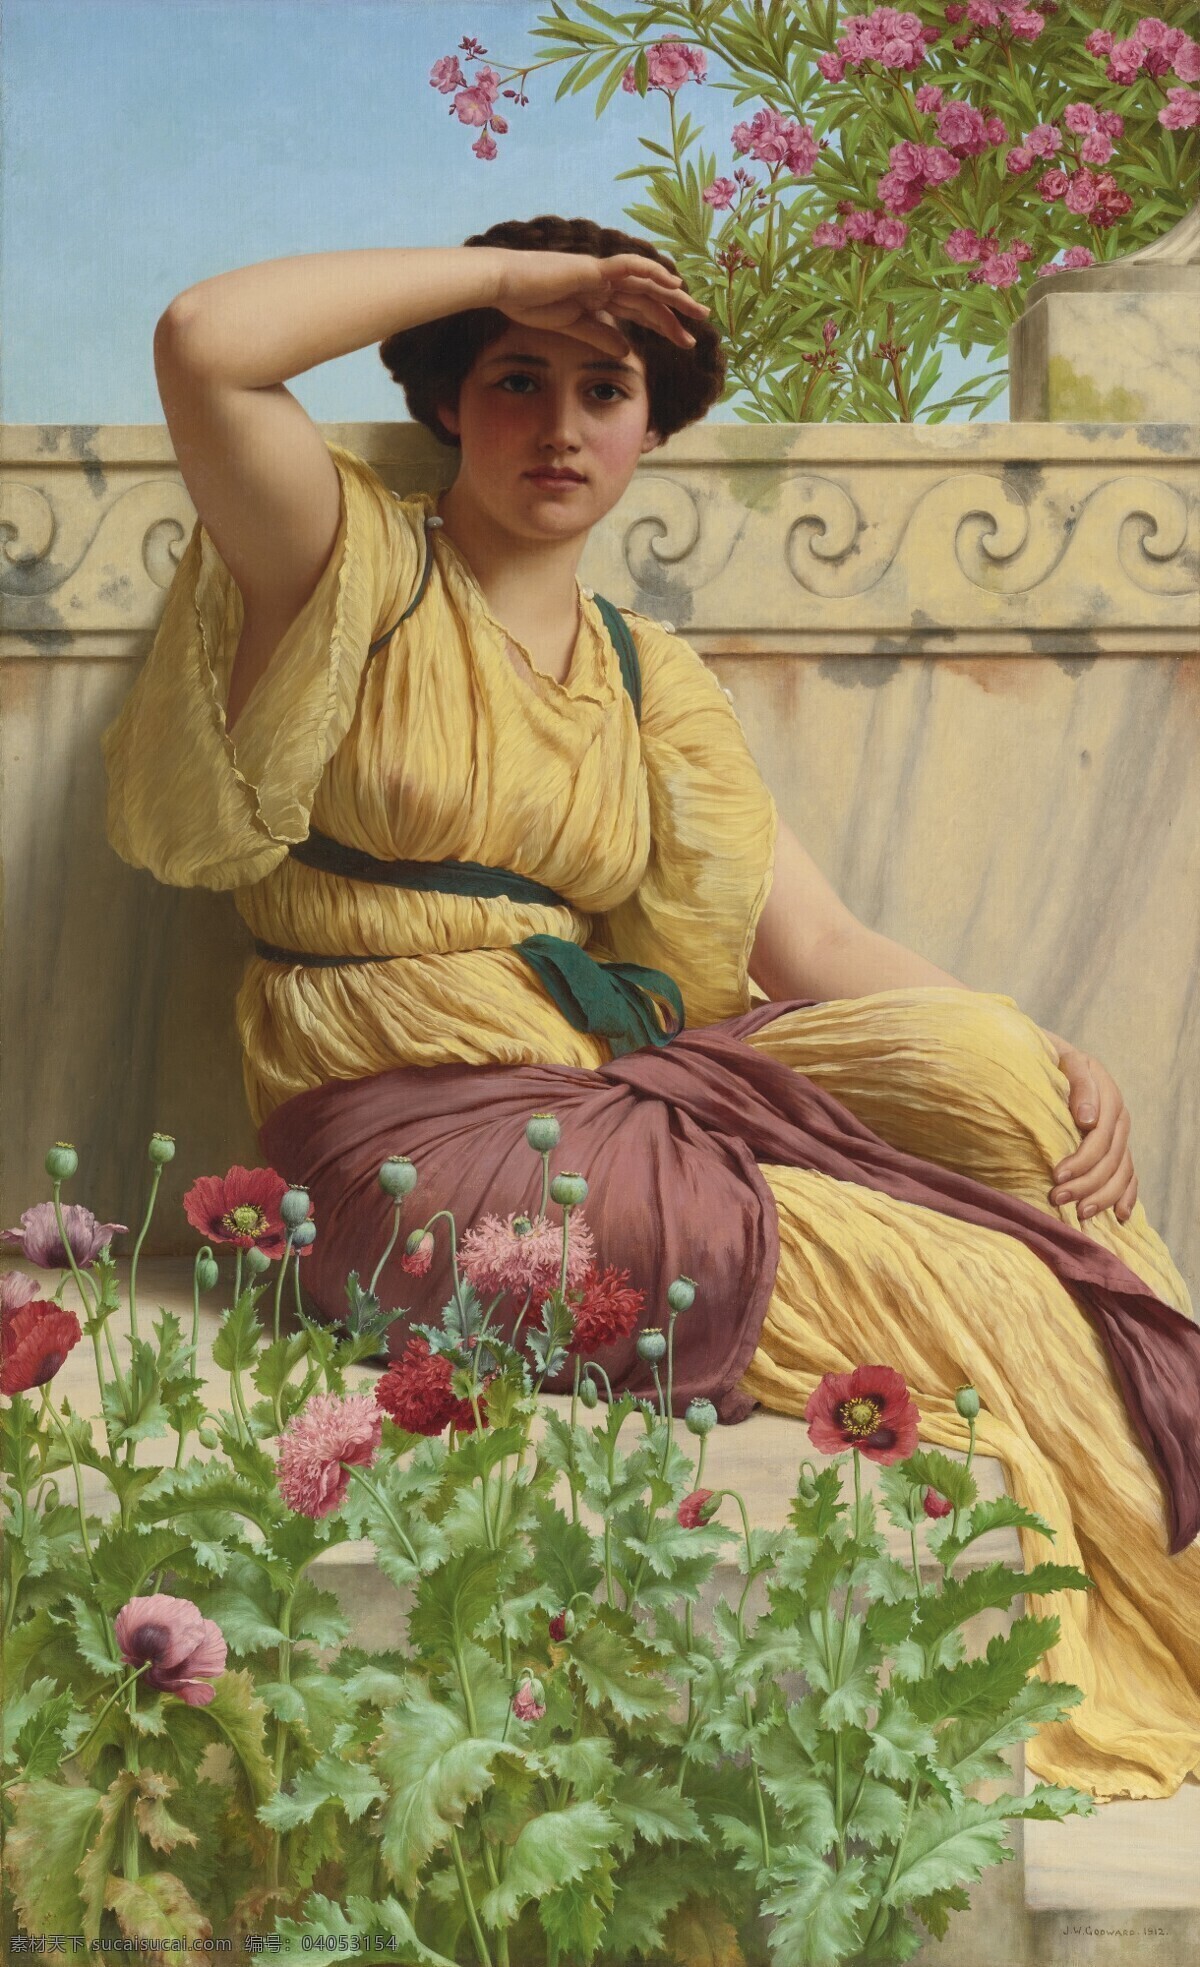 女子 瞭望 坐像 花丛边 新 浪漫主义 画派 19世纪油画 油画 绘画书法 文化艺术